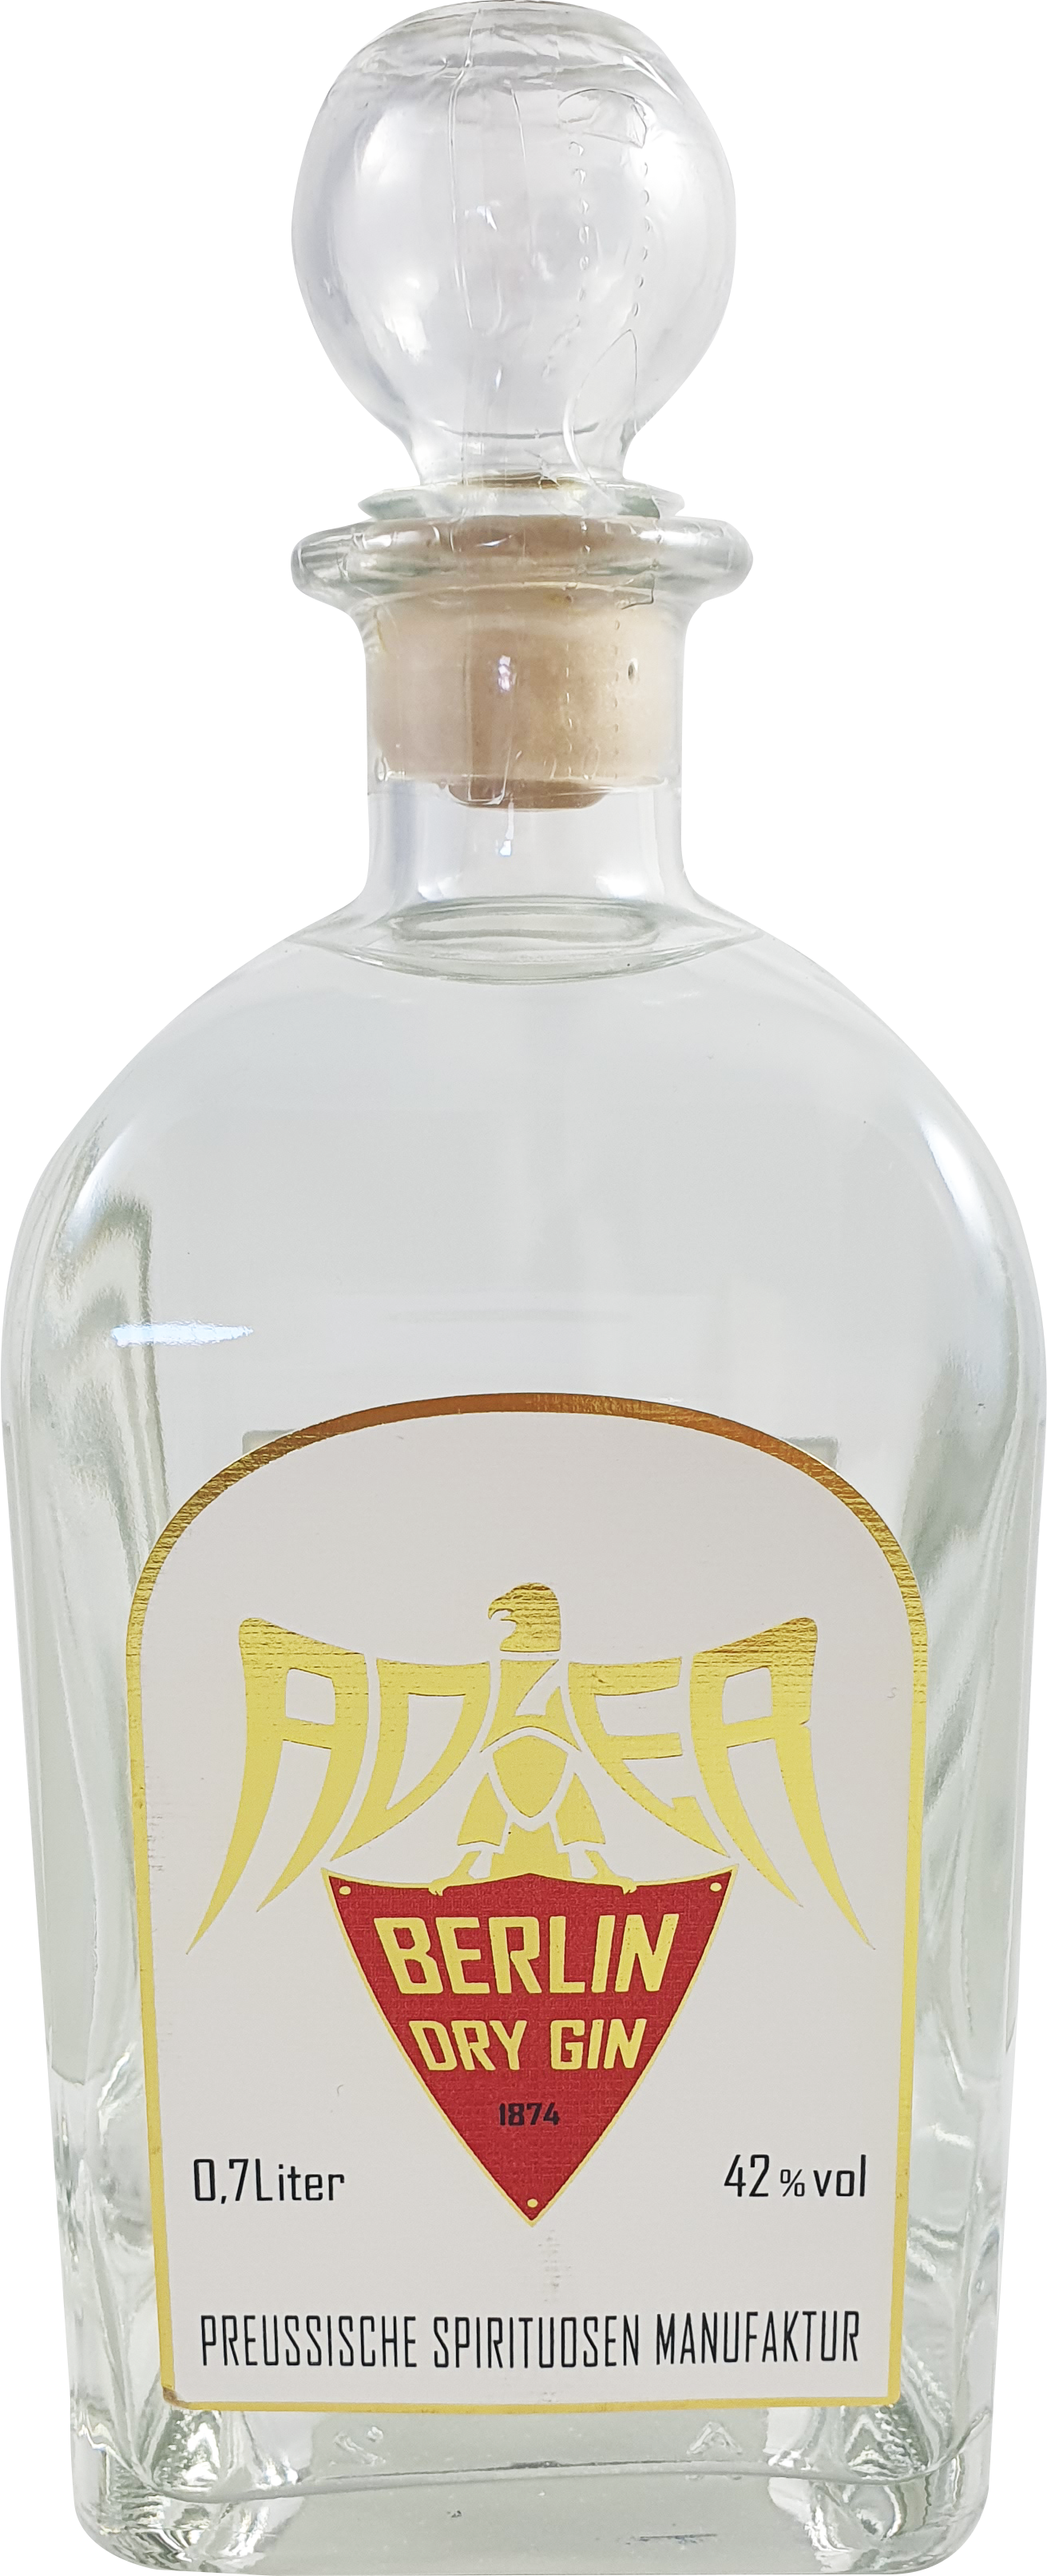 Adler Berlin Dry Gin 42% 